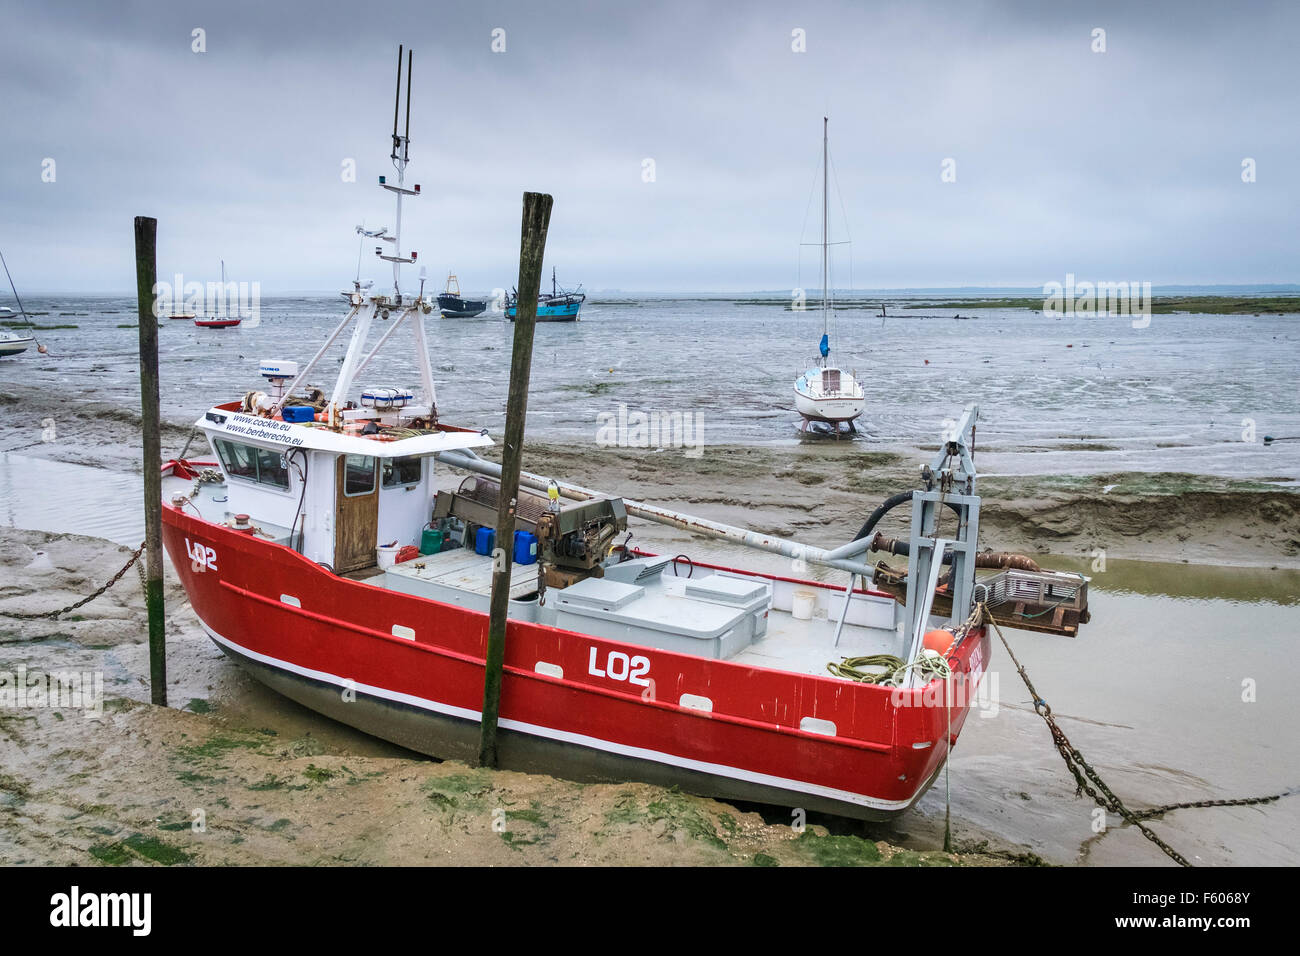 La draga de succión y shrimper venganza LO2 amarrados a Leigh sobre Mar en Essex Foto de stock